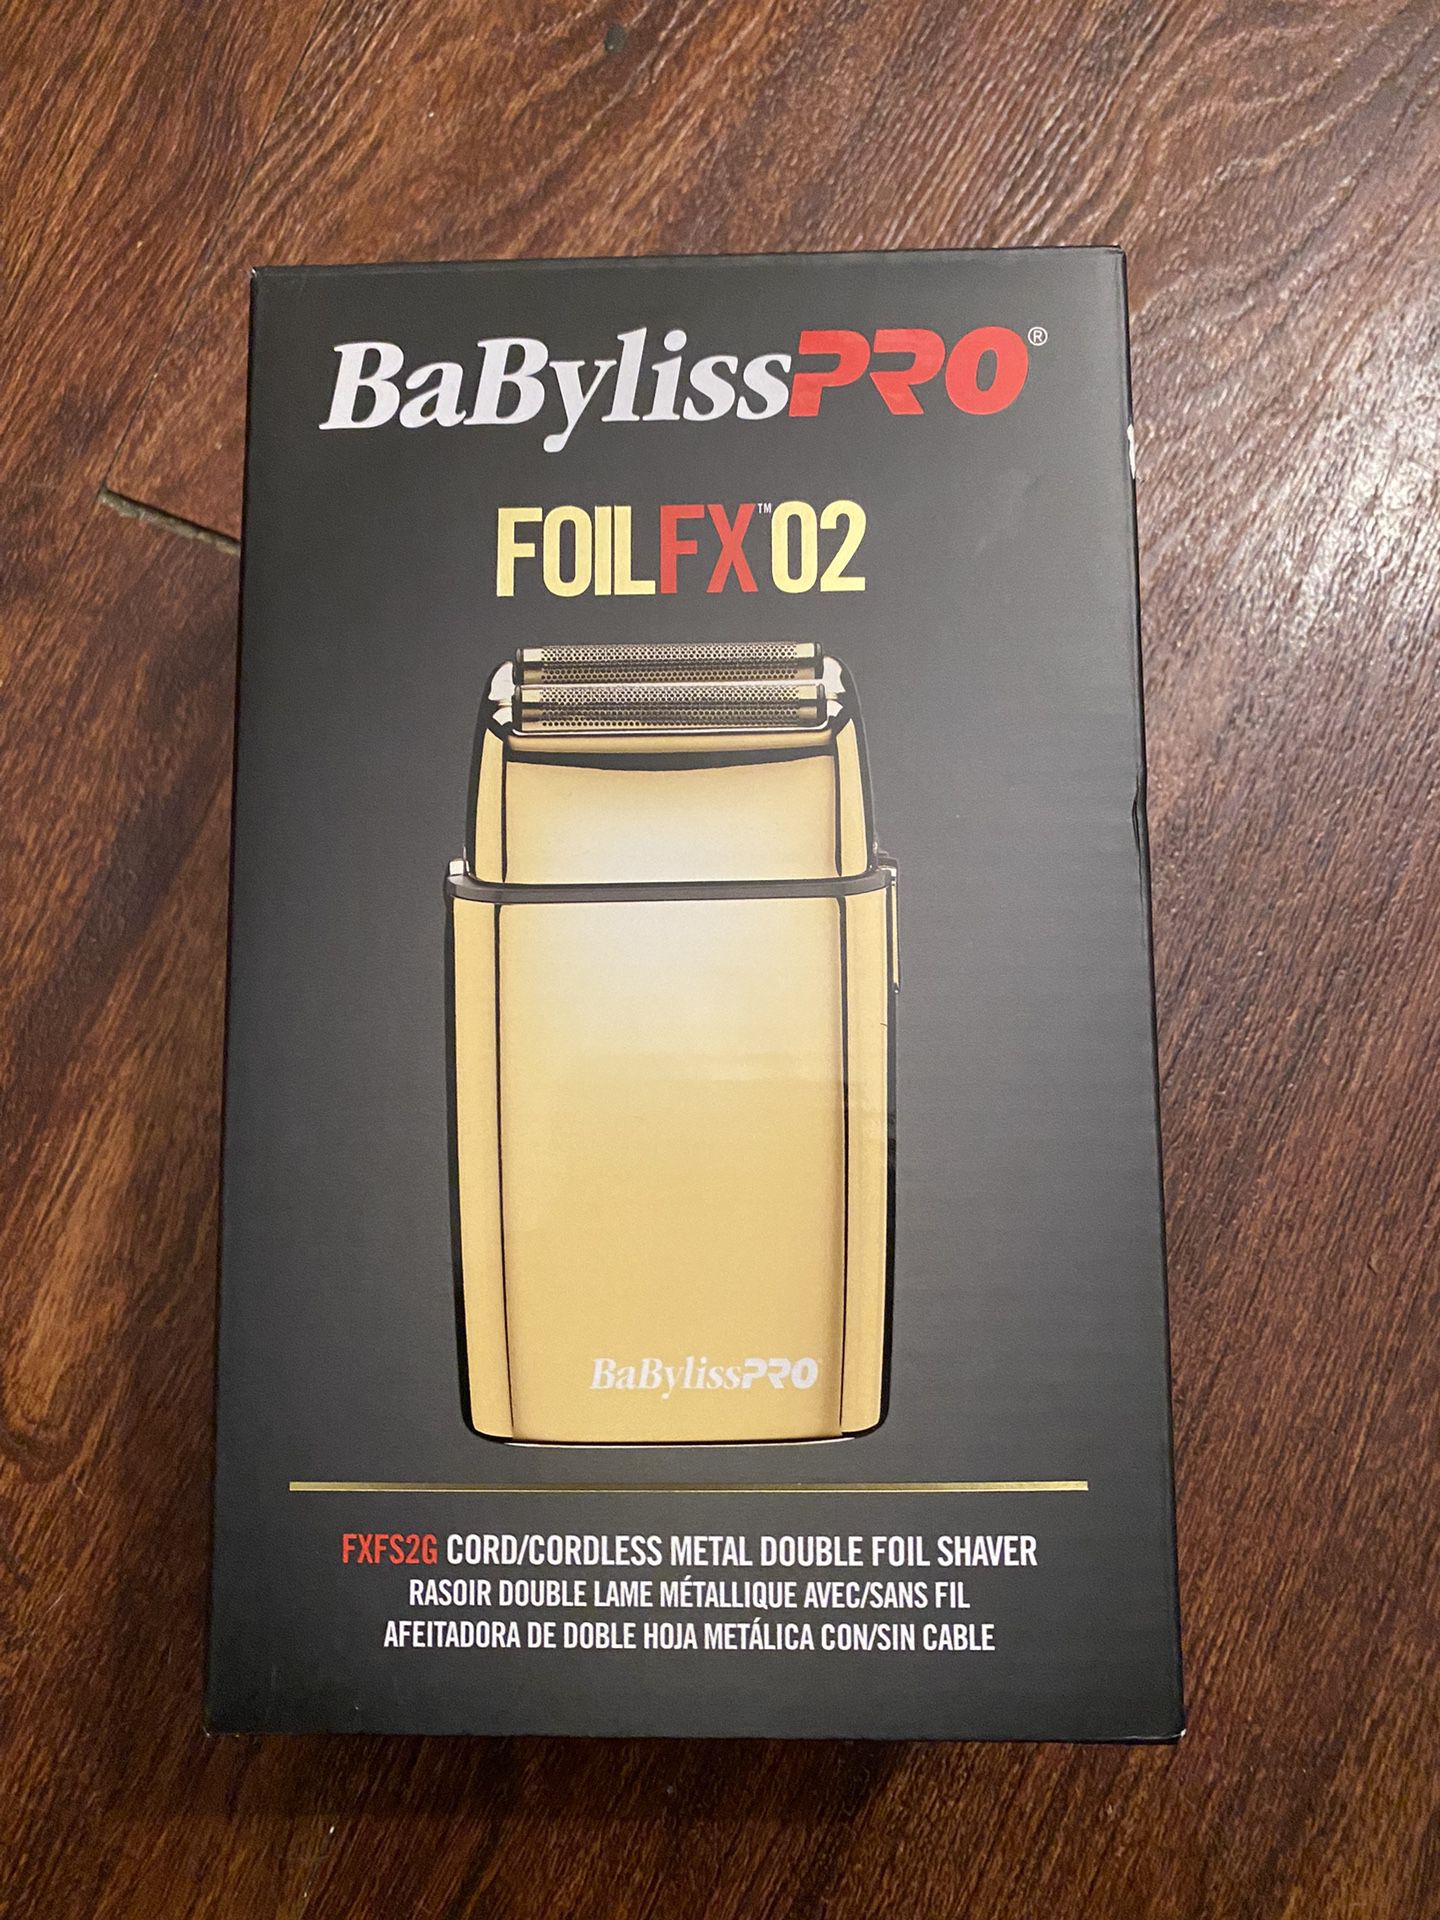 BabylissPro FOILFX02 Cordless Metal Double Foil Shaver - Gold